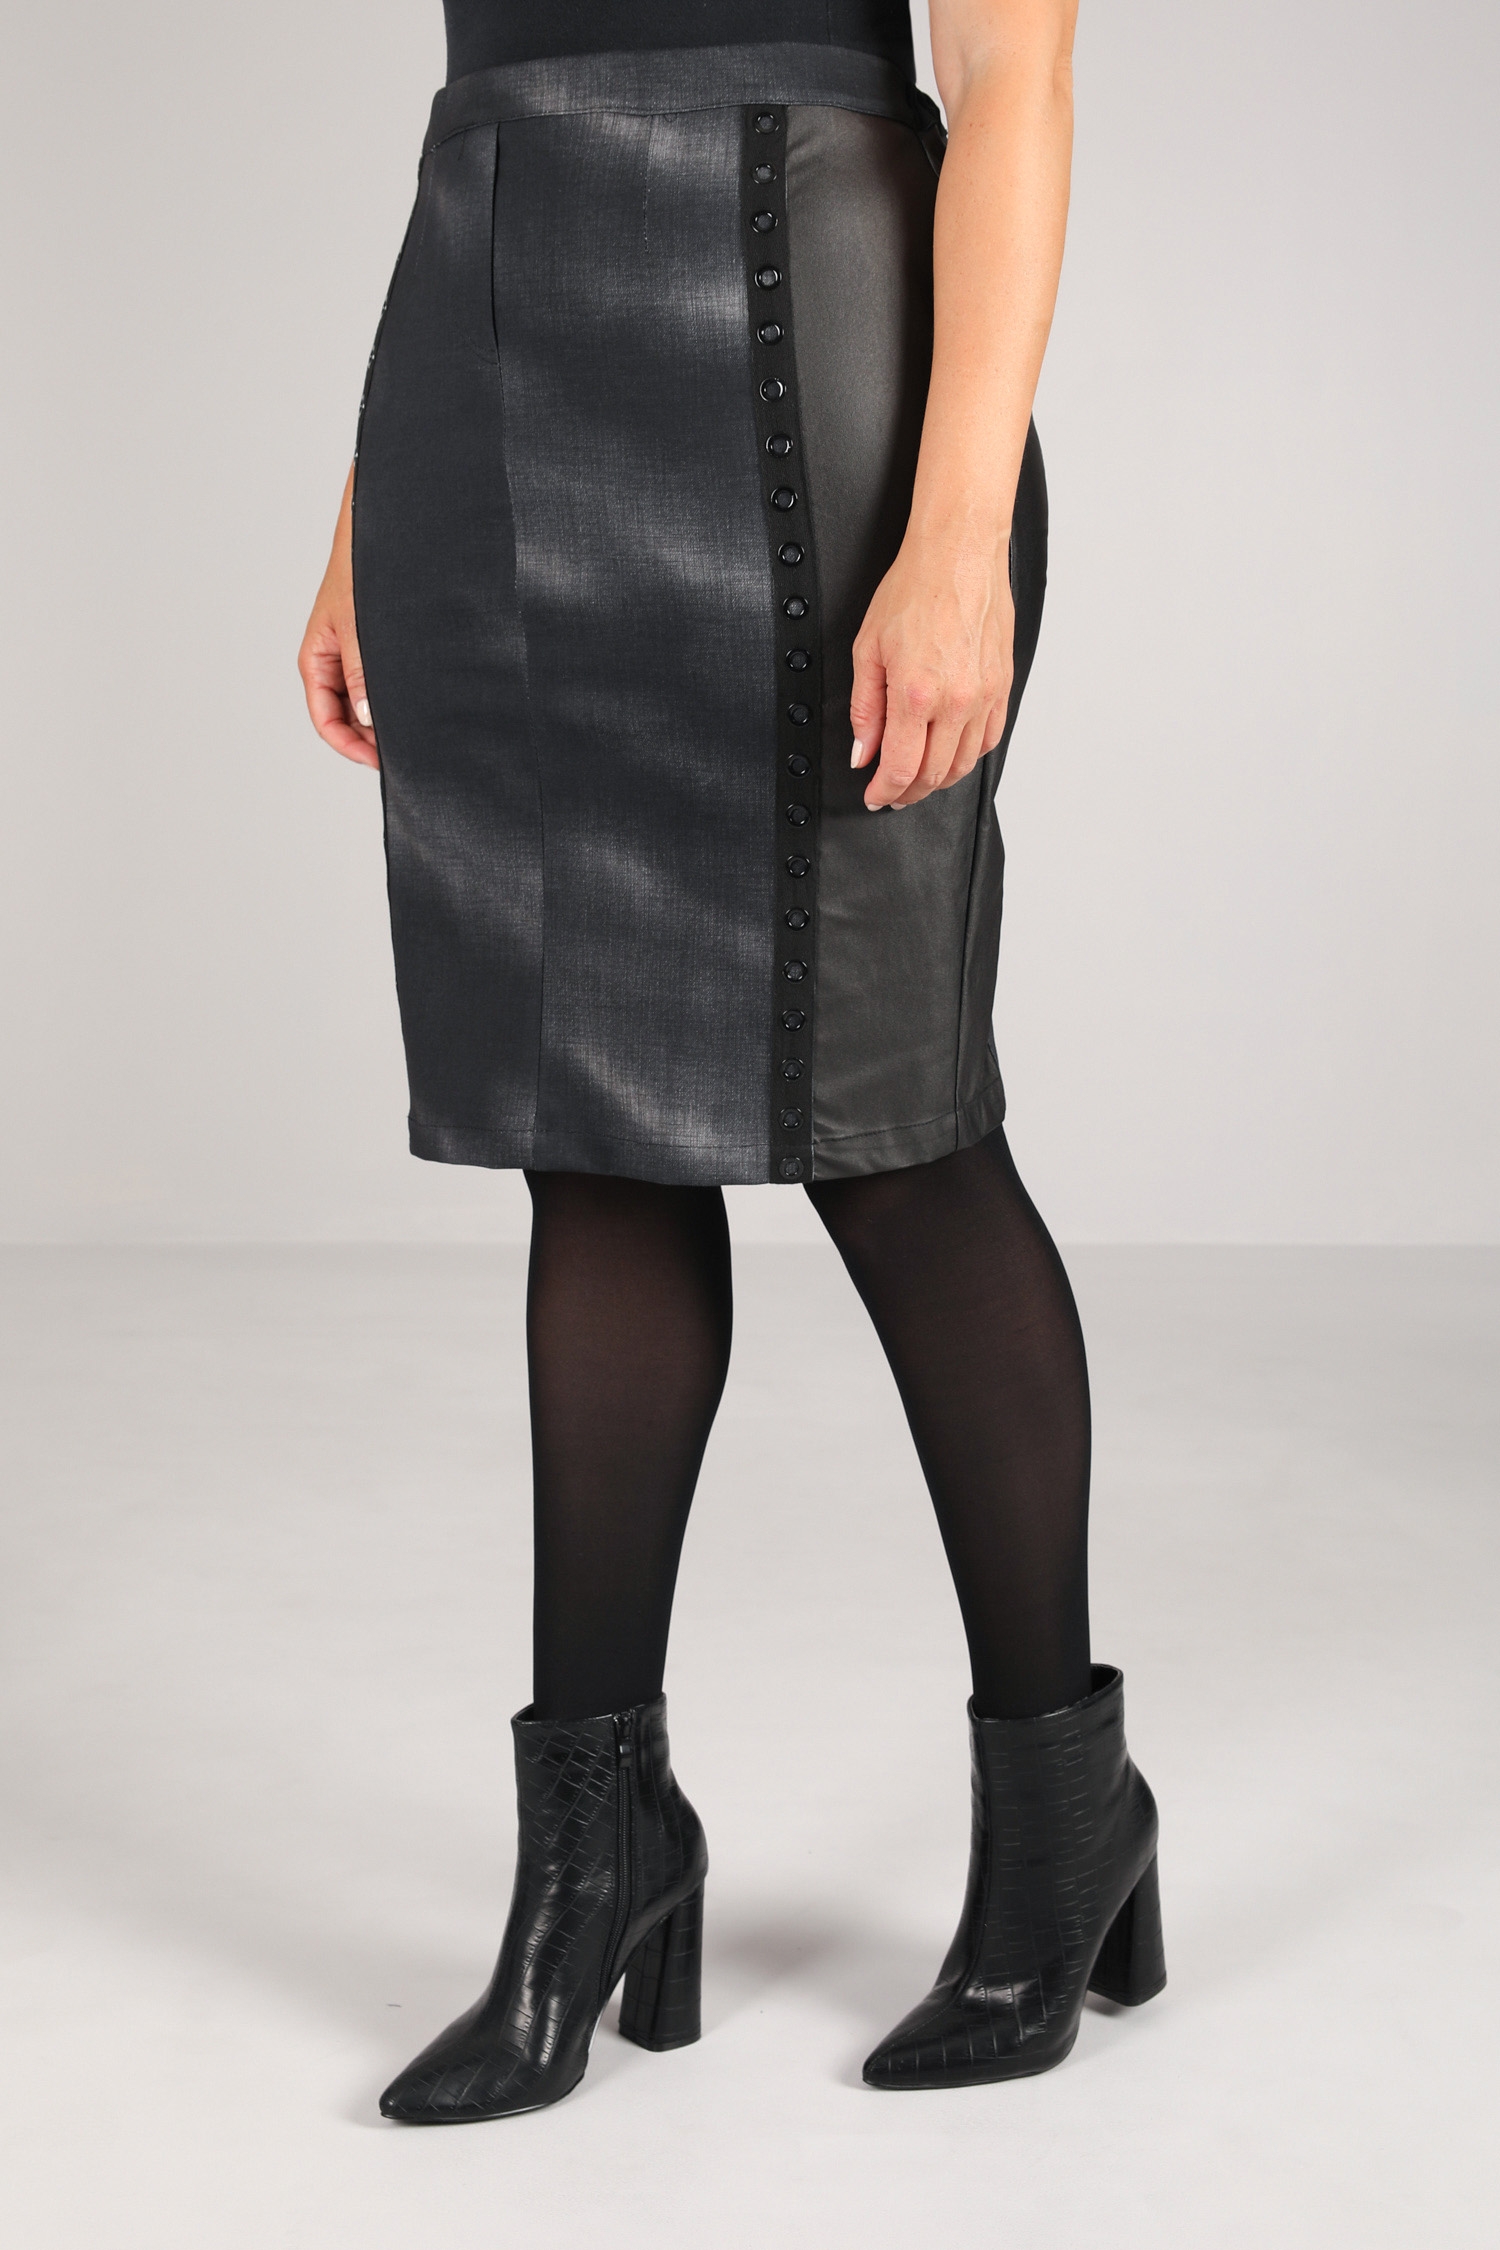 Bi-material straight skirt